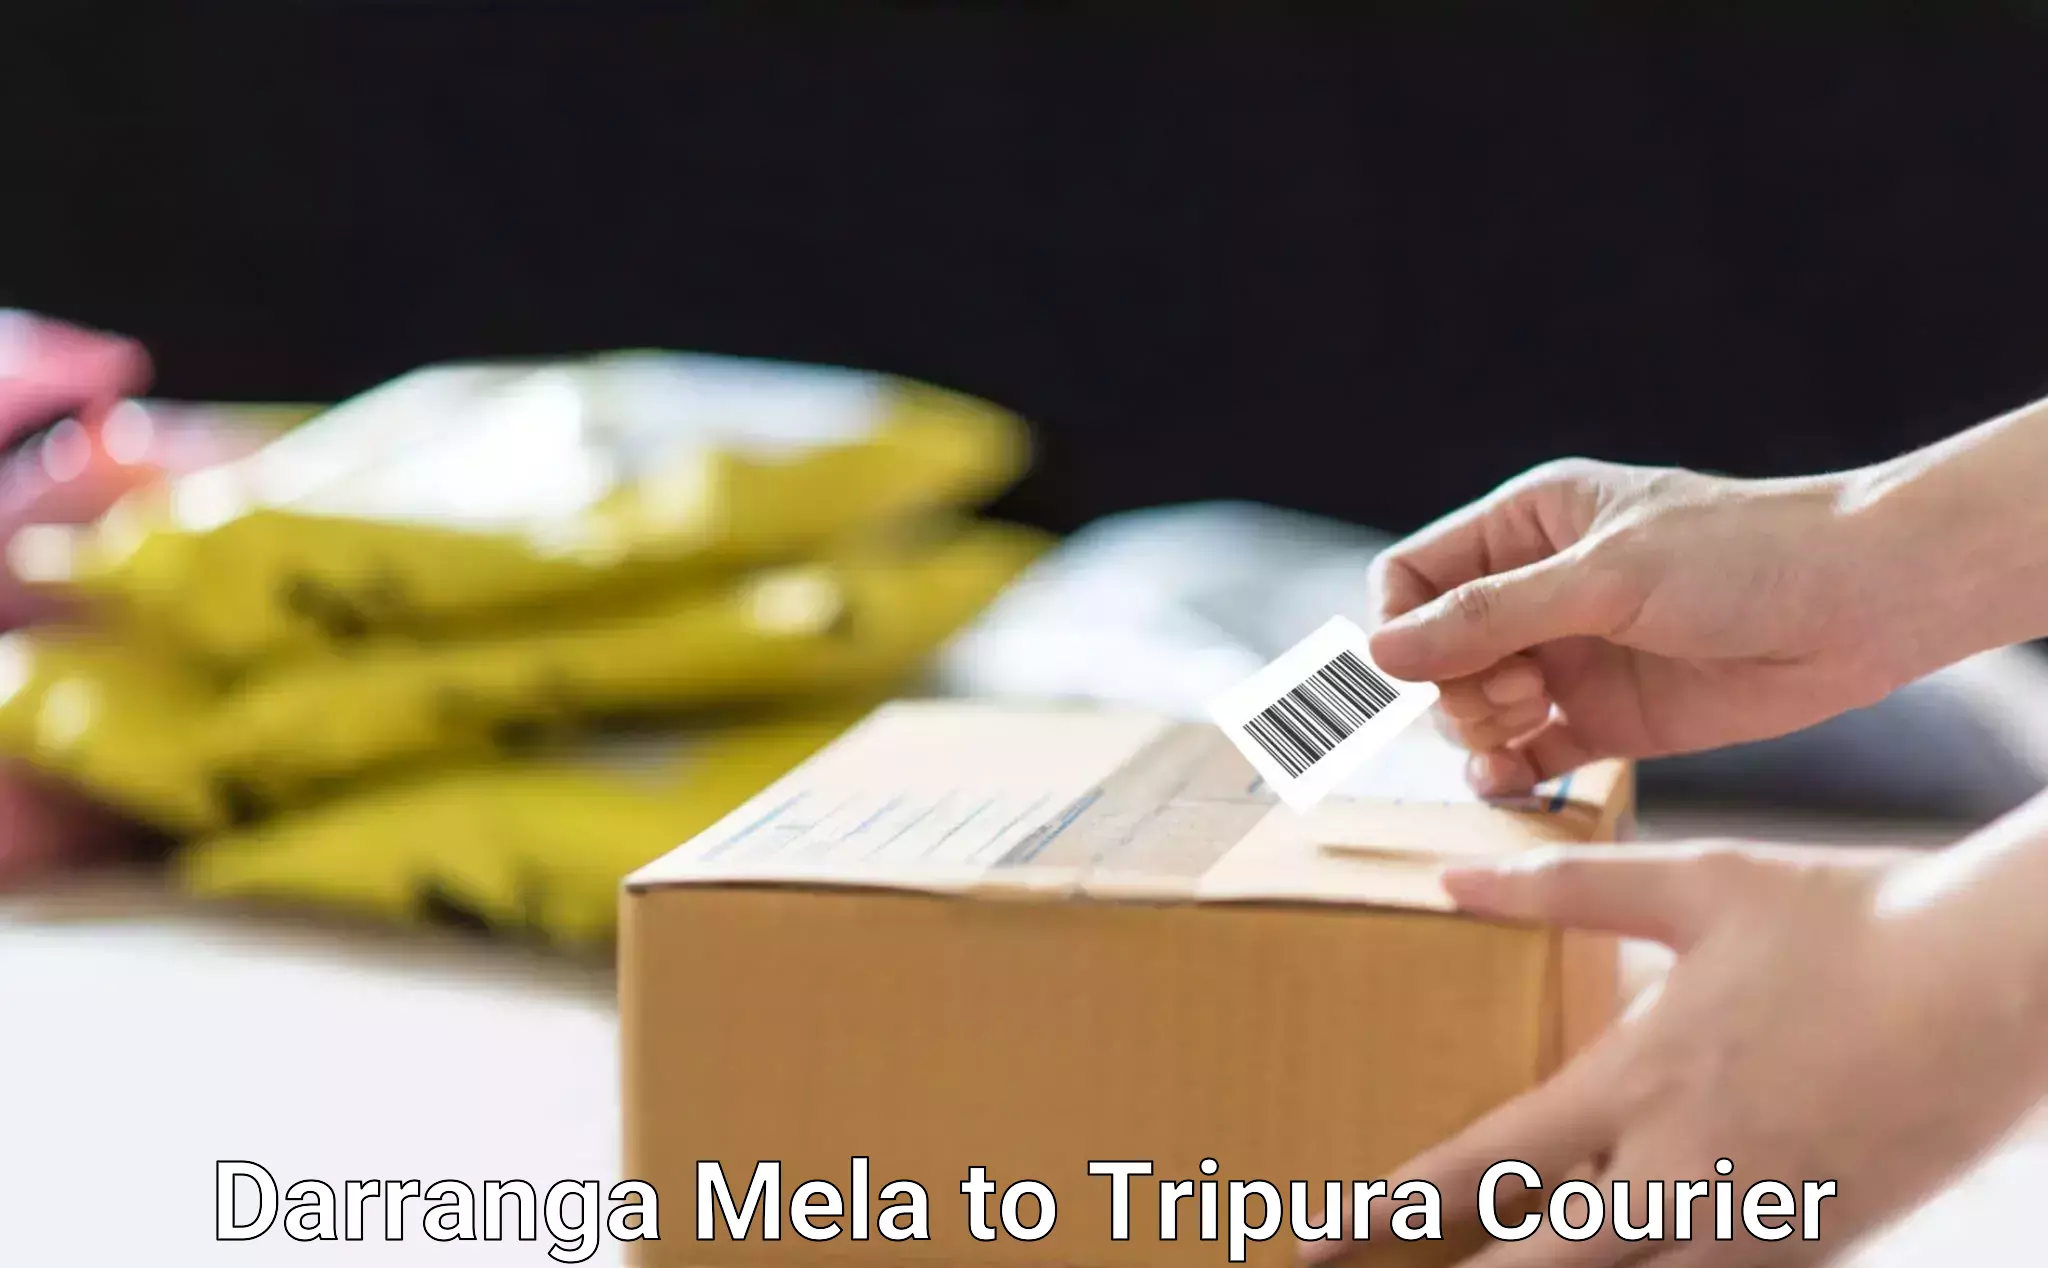 Urban courier service Darranga Mela to Tripura